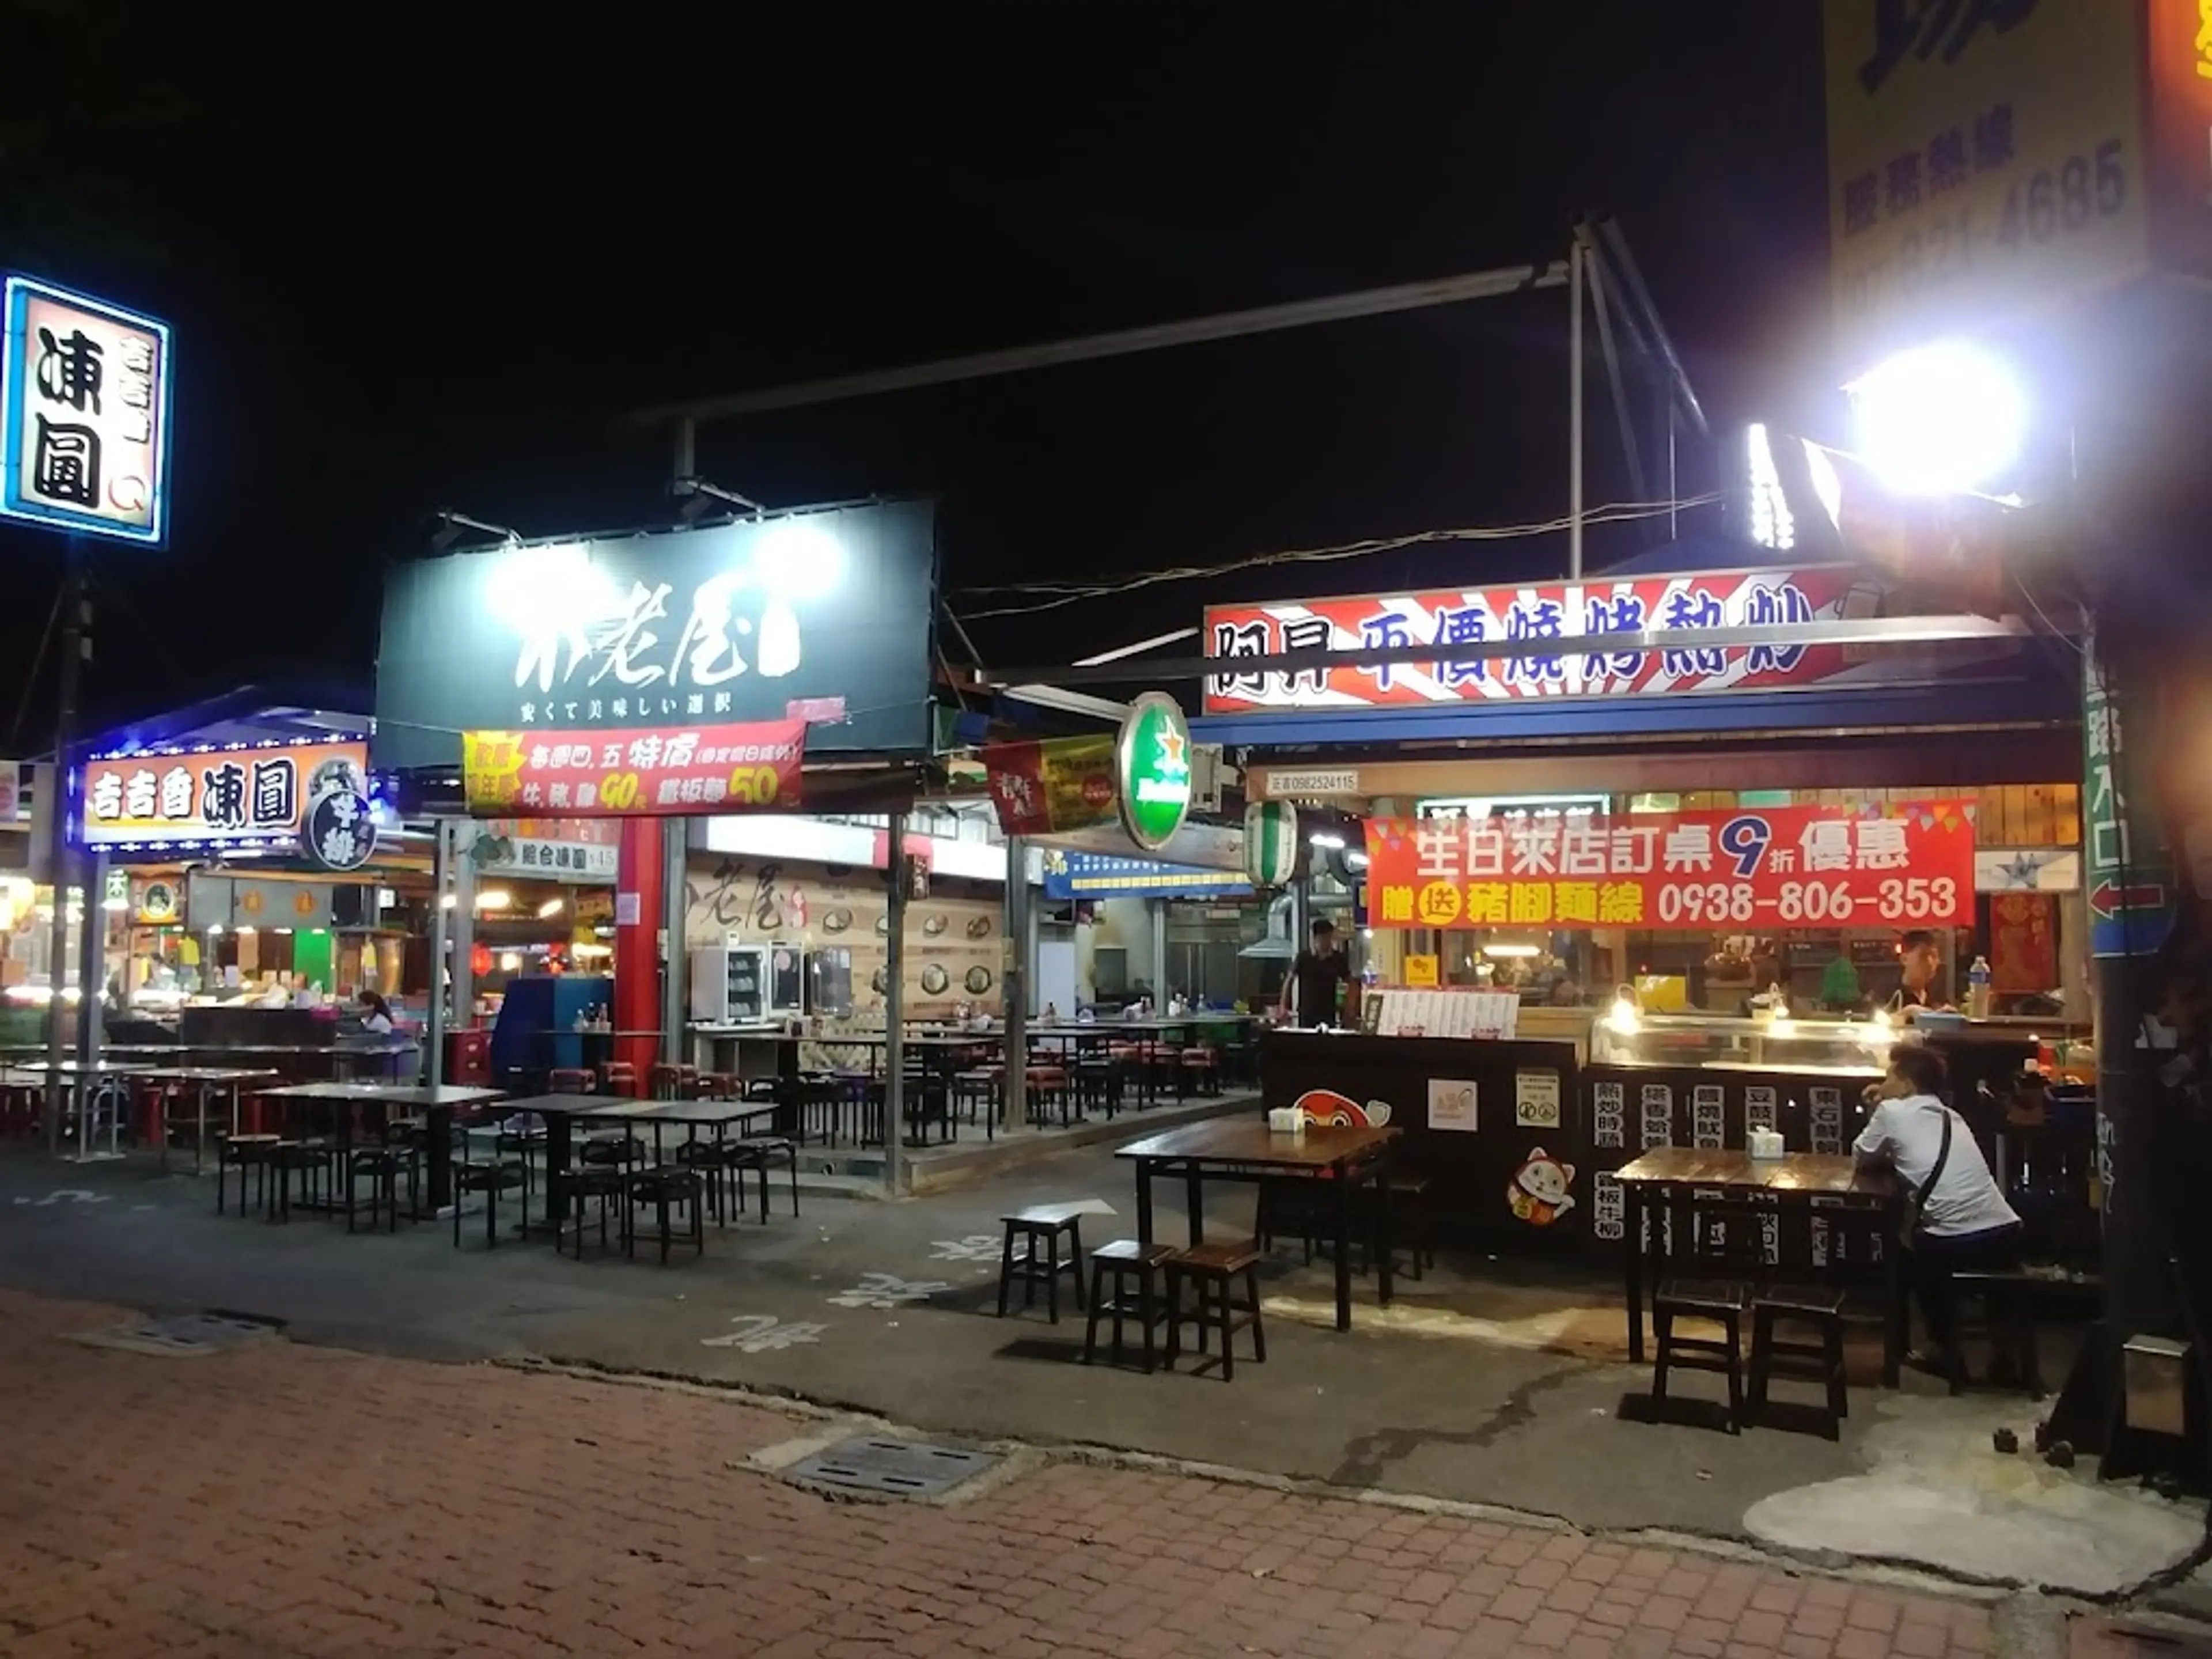 Kaisyuan Night Market